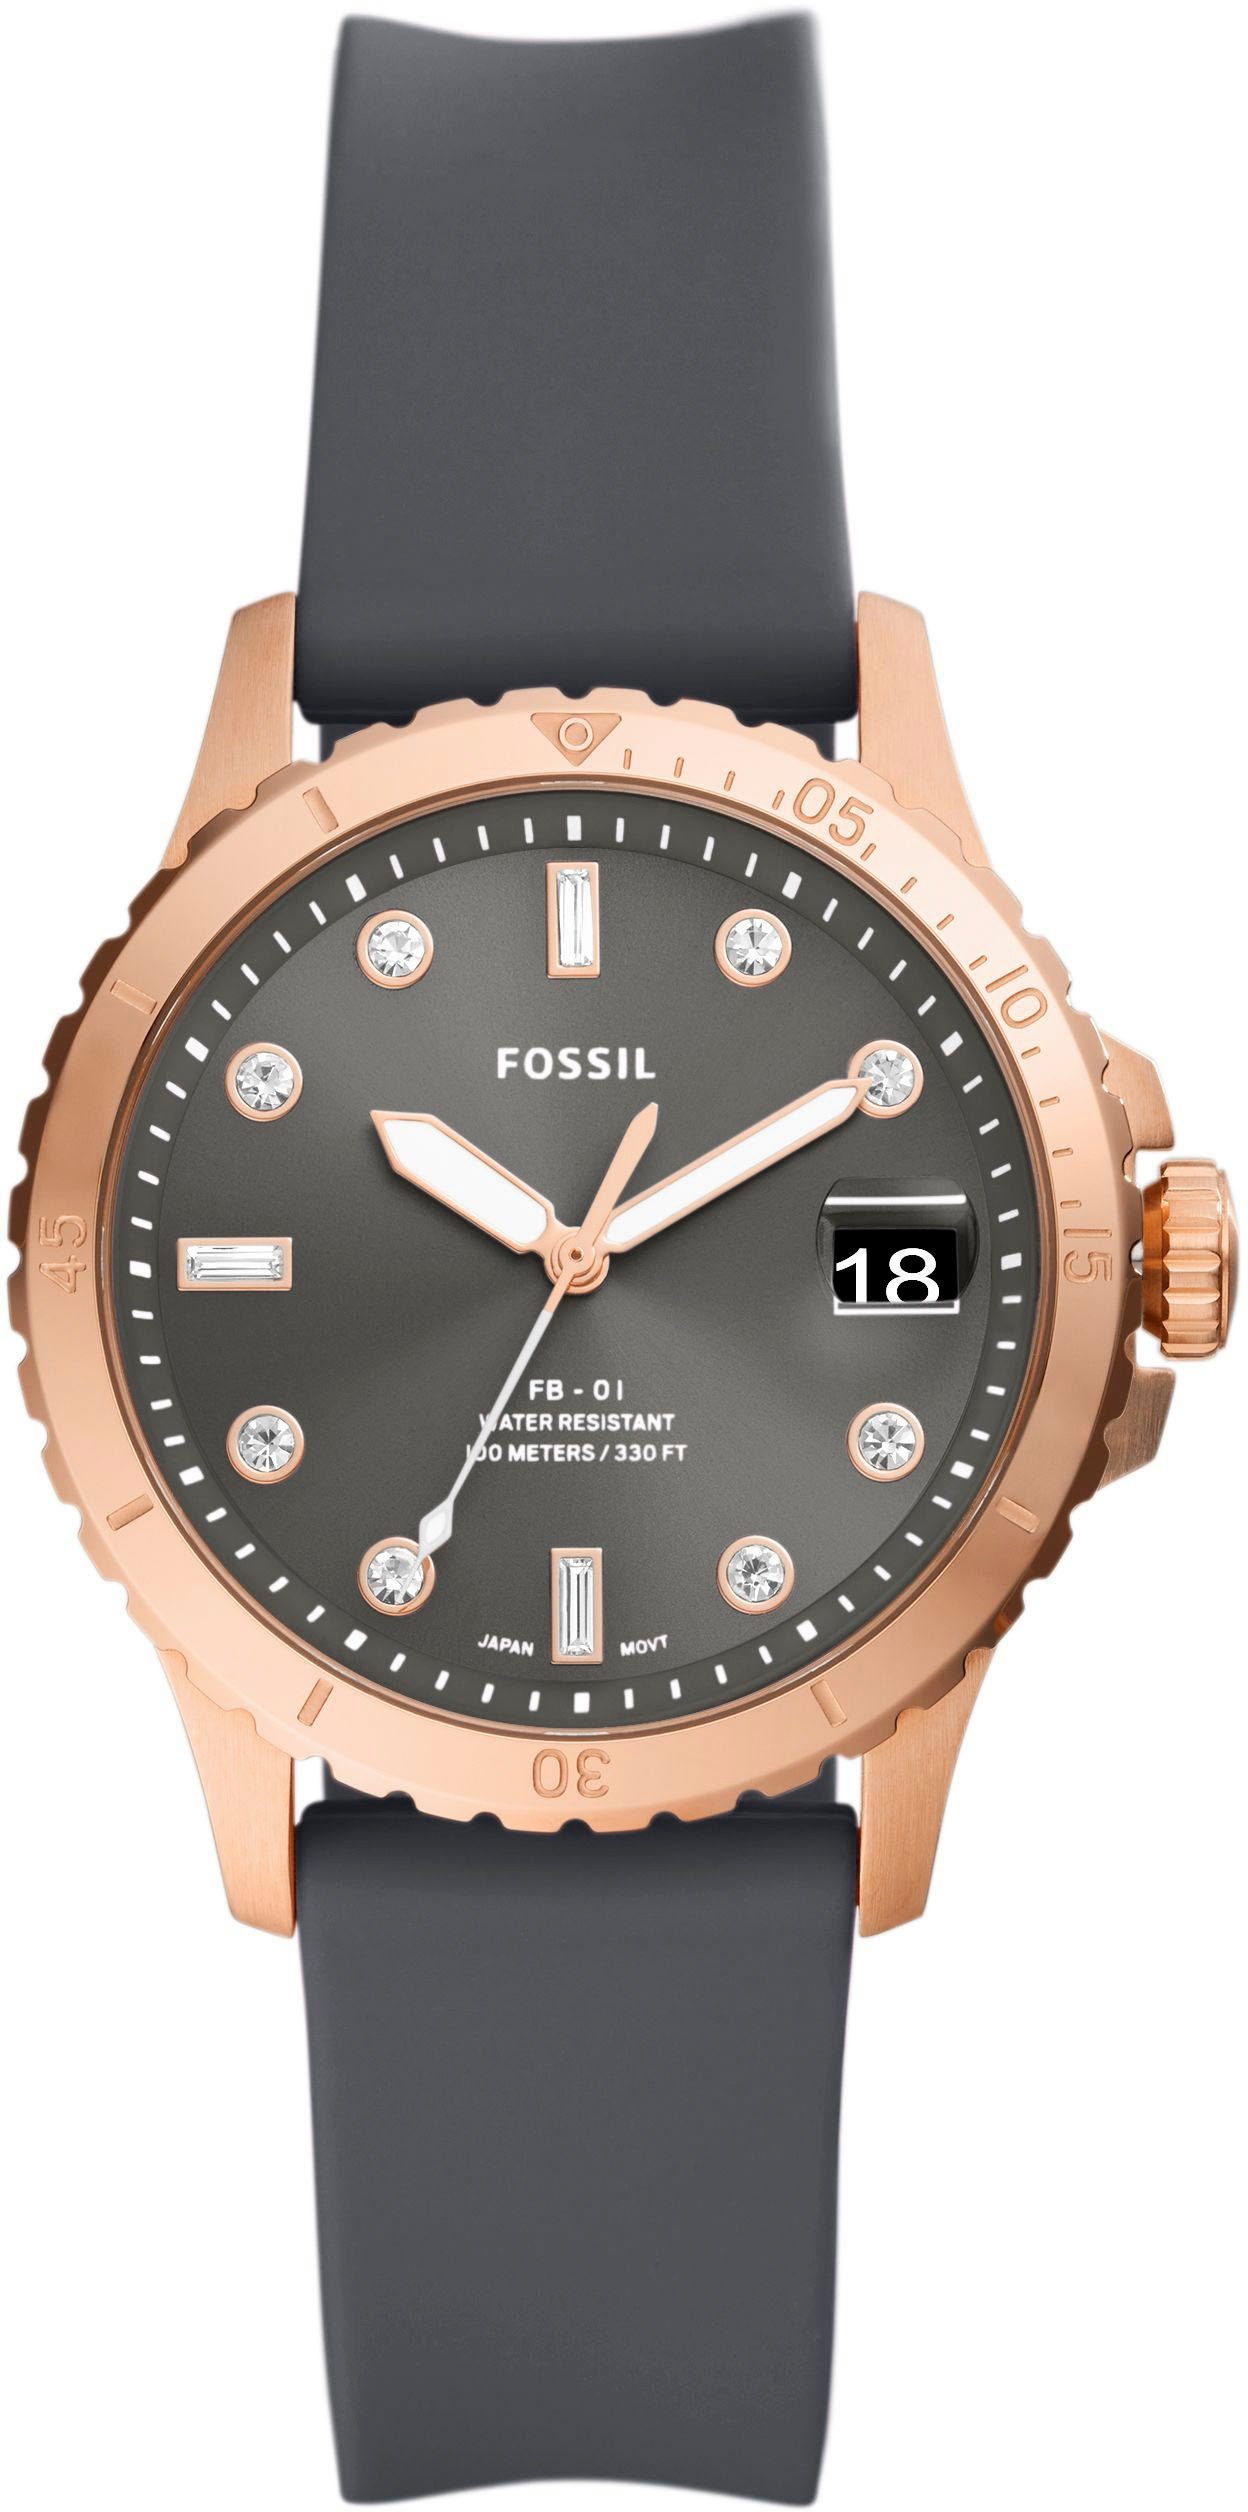 Fossil Quarzuhr FB-01, ES5293, Armbanduhr, Damenuhr, Datum, analog